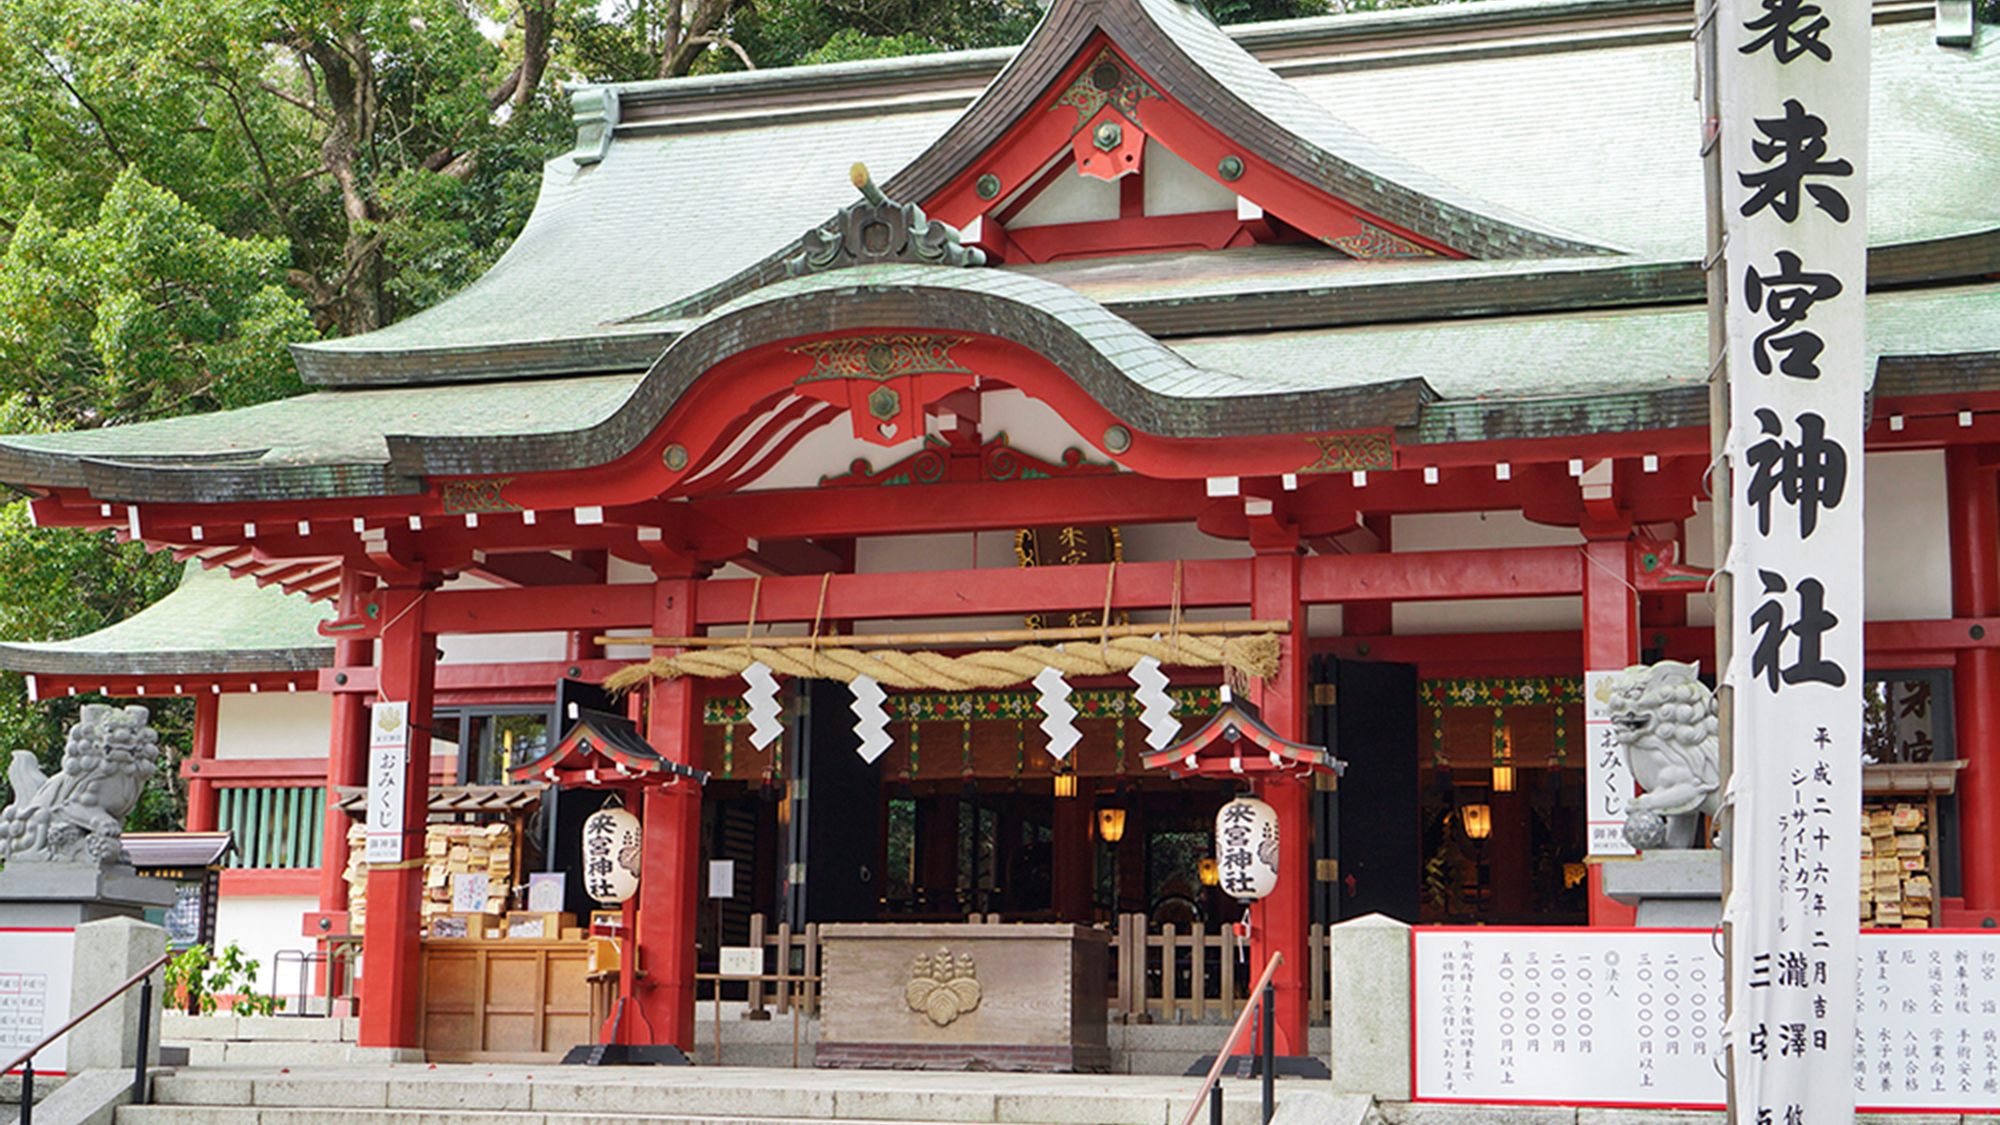 パワースポットで有名な熱海来宮神社